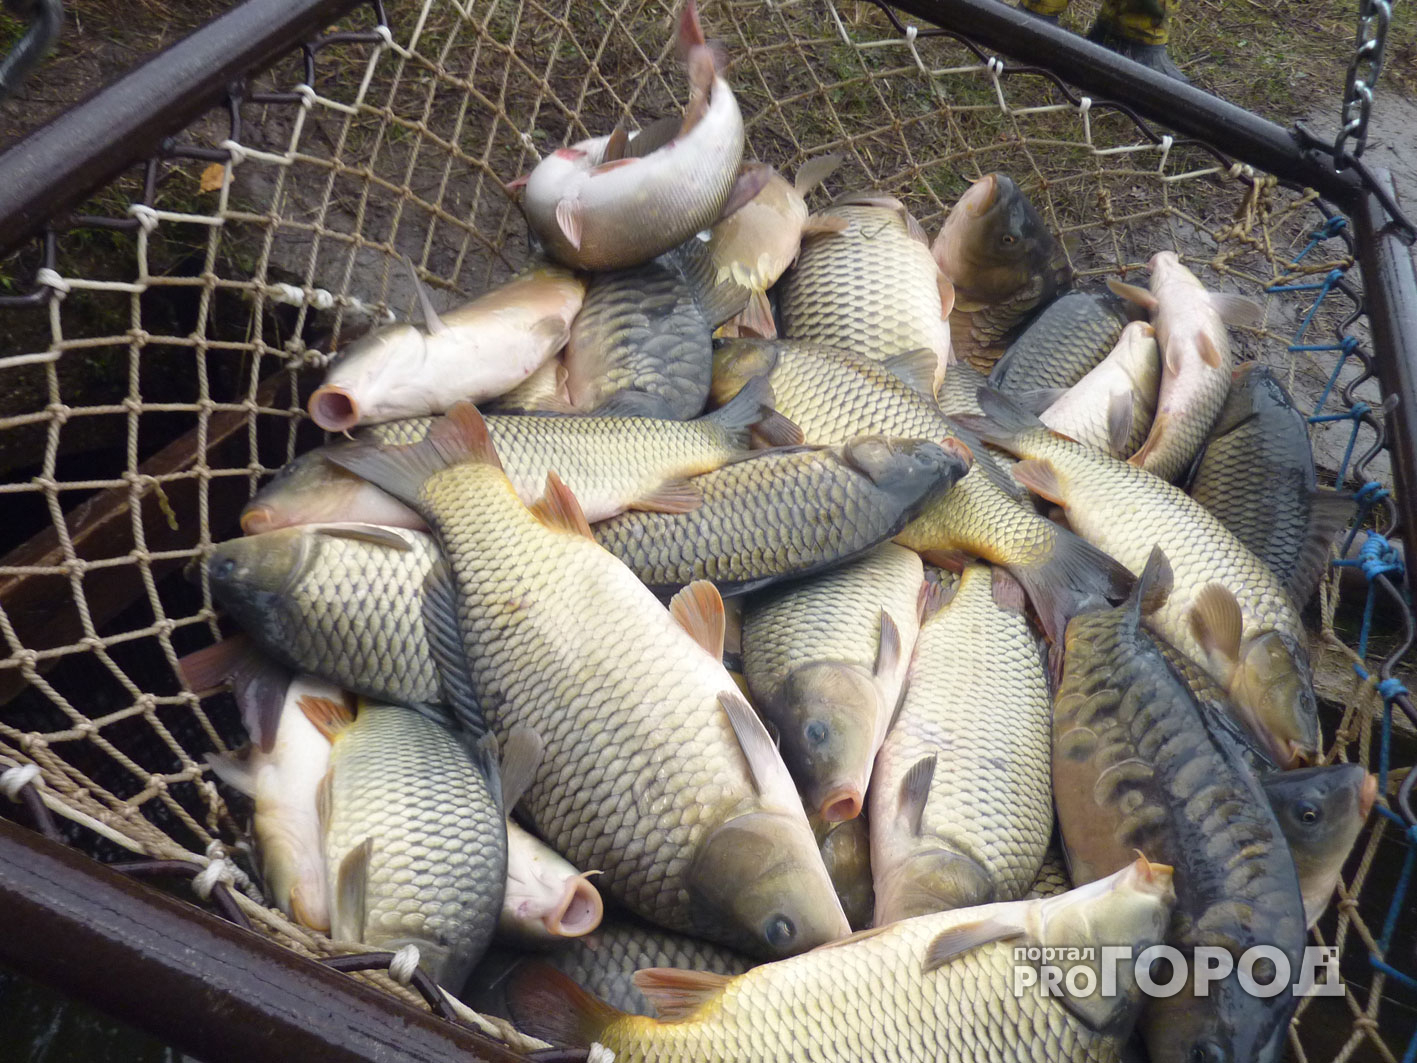 200 кг рыбы изъяли во Владимирской области